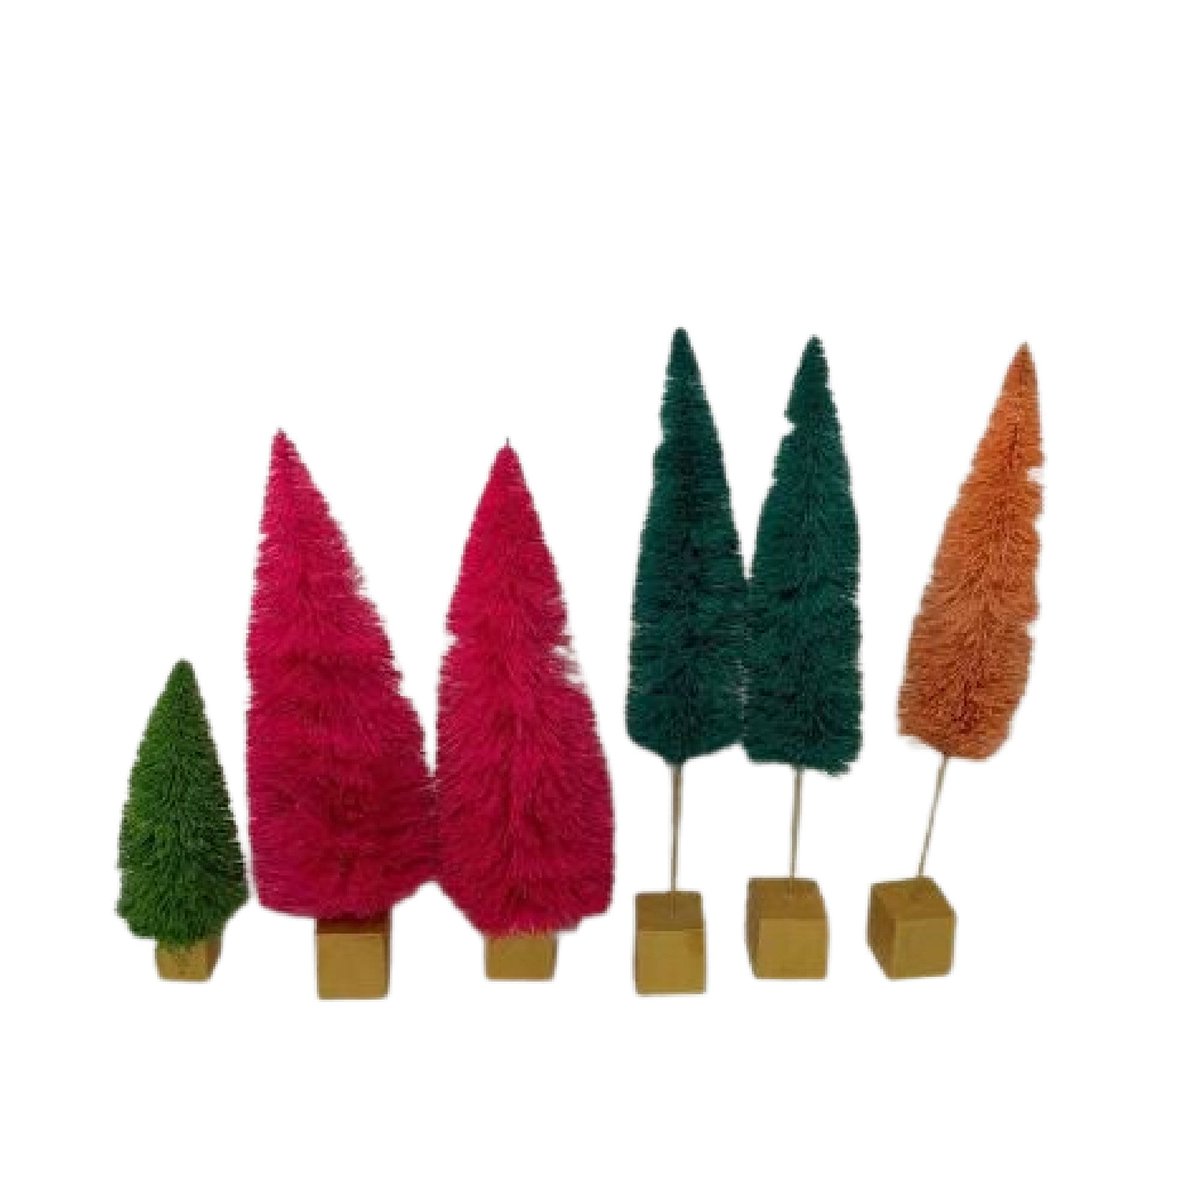 Vintage Rainbow Bottle Brush Trees Set of 6 Sisal-Trees Christmas-8'-15''Tall etsy.me/41NujNL #rainbow #christmasvillage #christmasdecor #christmastrees #sisalbottlebrush #craftprojects #bottlebrushtrees #ponderosapines #vintagechristmas